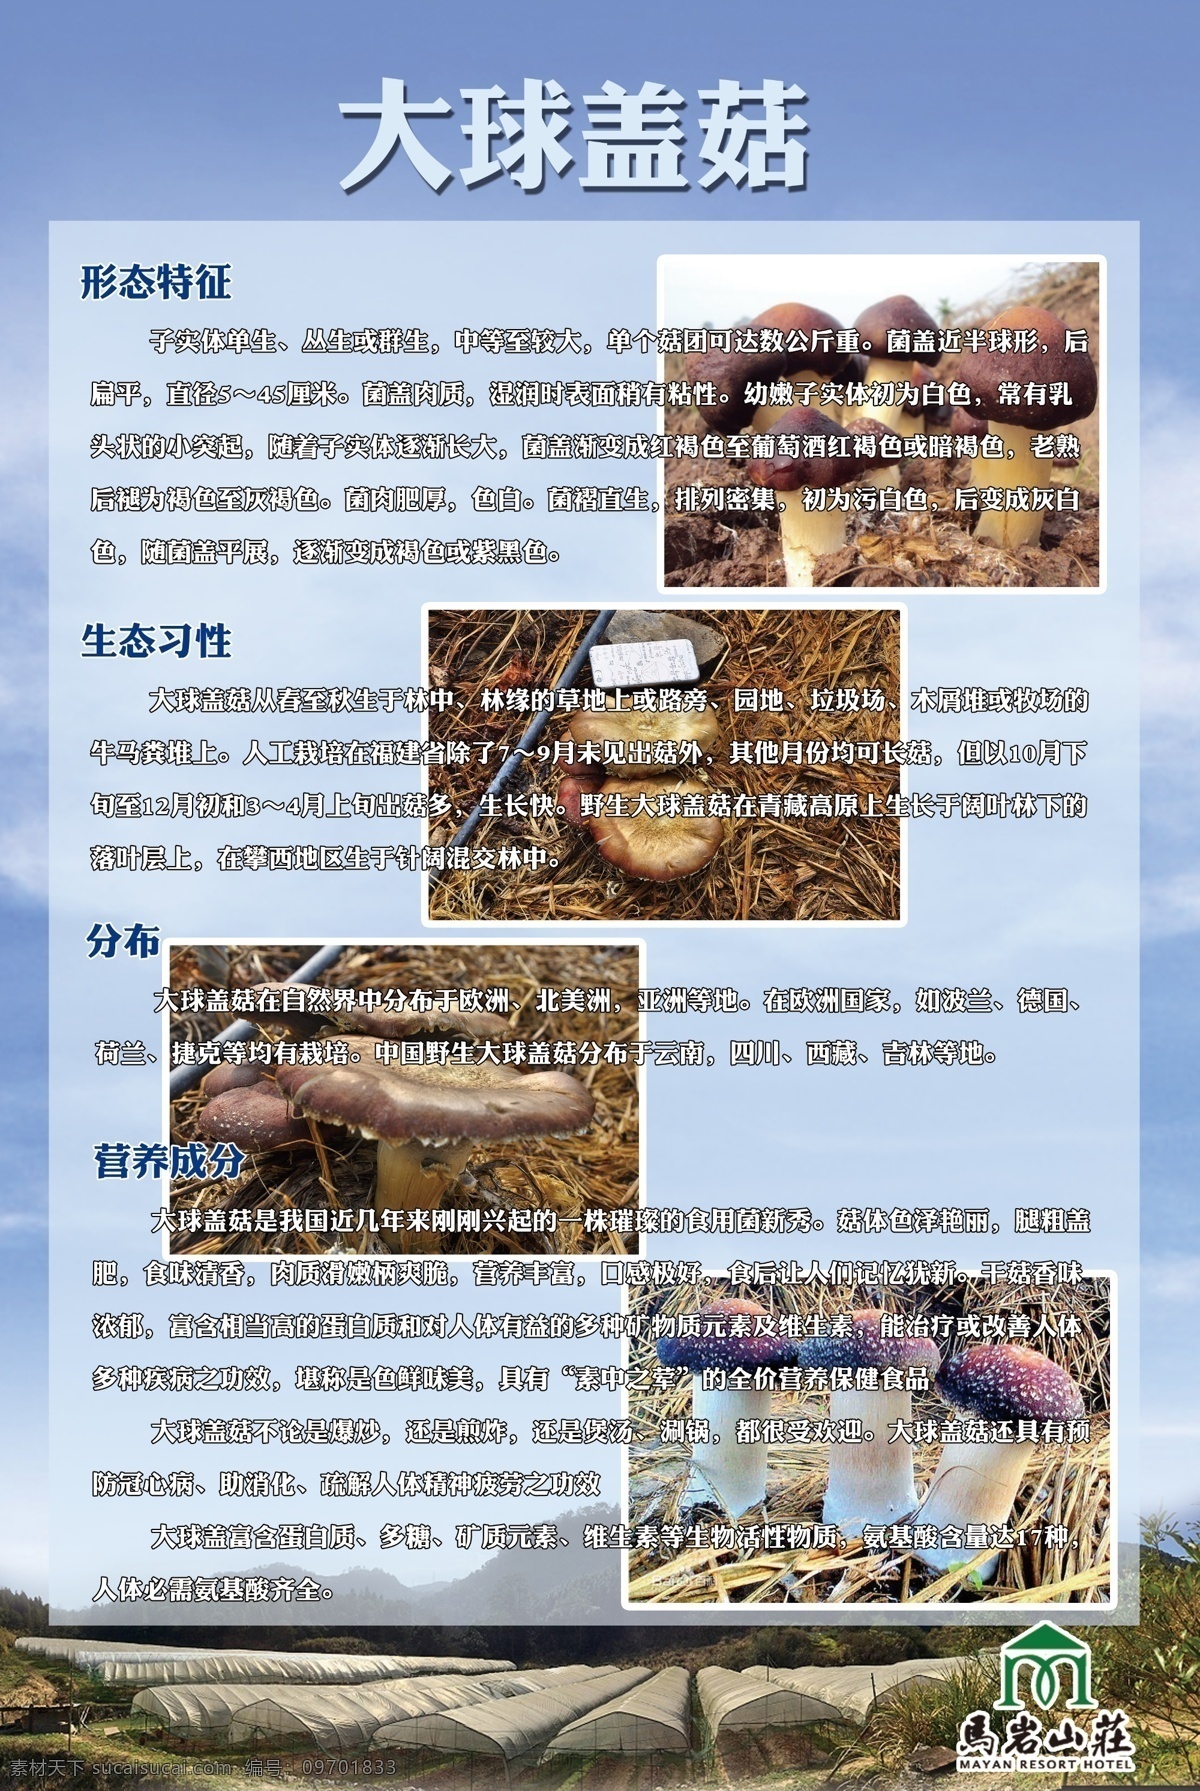 香菇海报 香菇介绍 食物 简介 大球盖菇 香菇 食用方法 海报 tif分层 宣传单